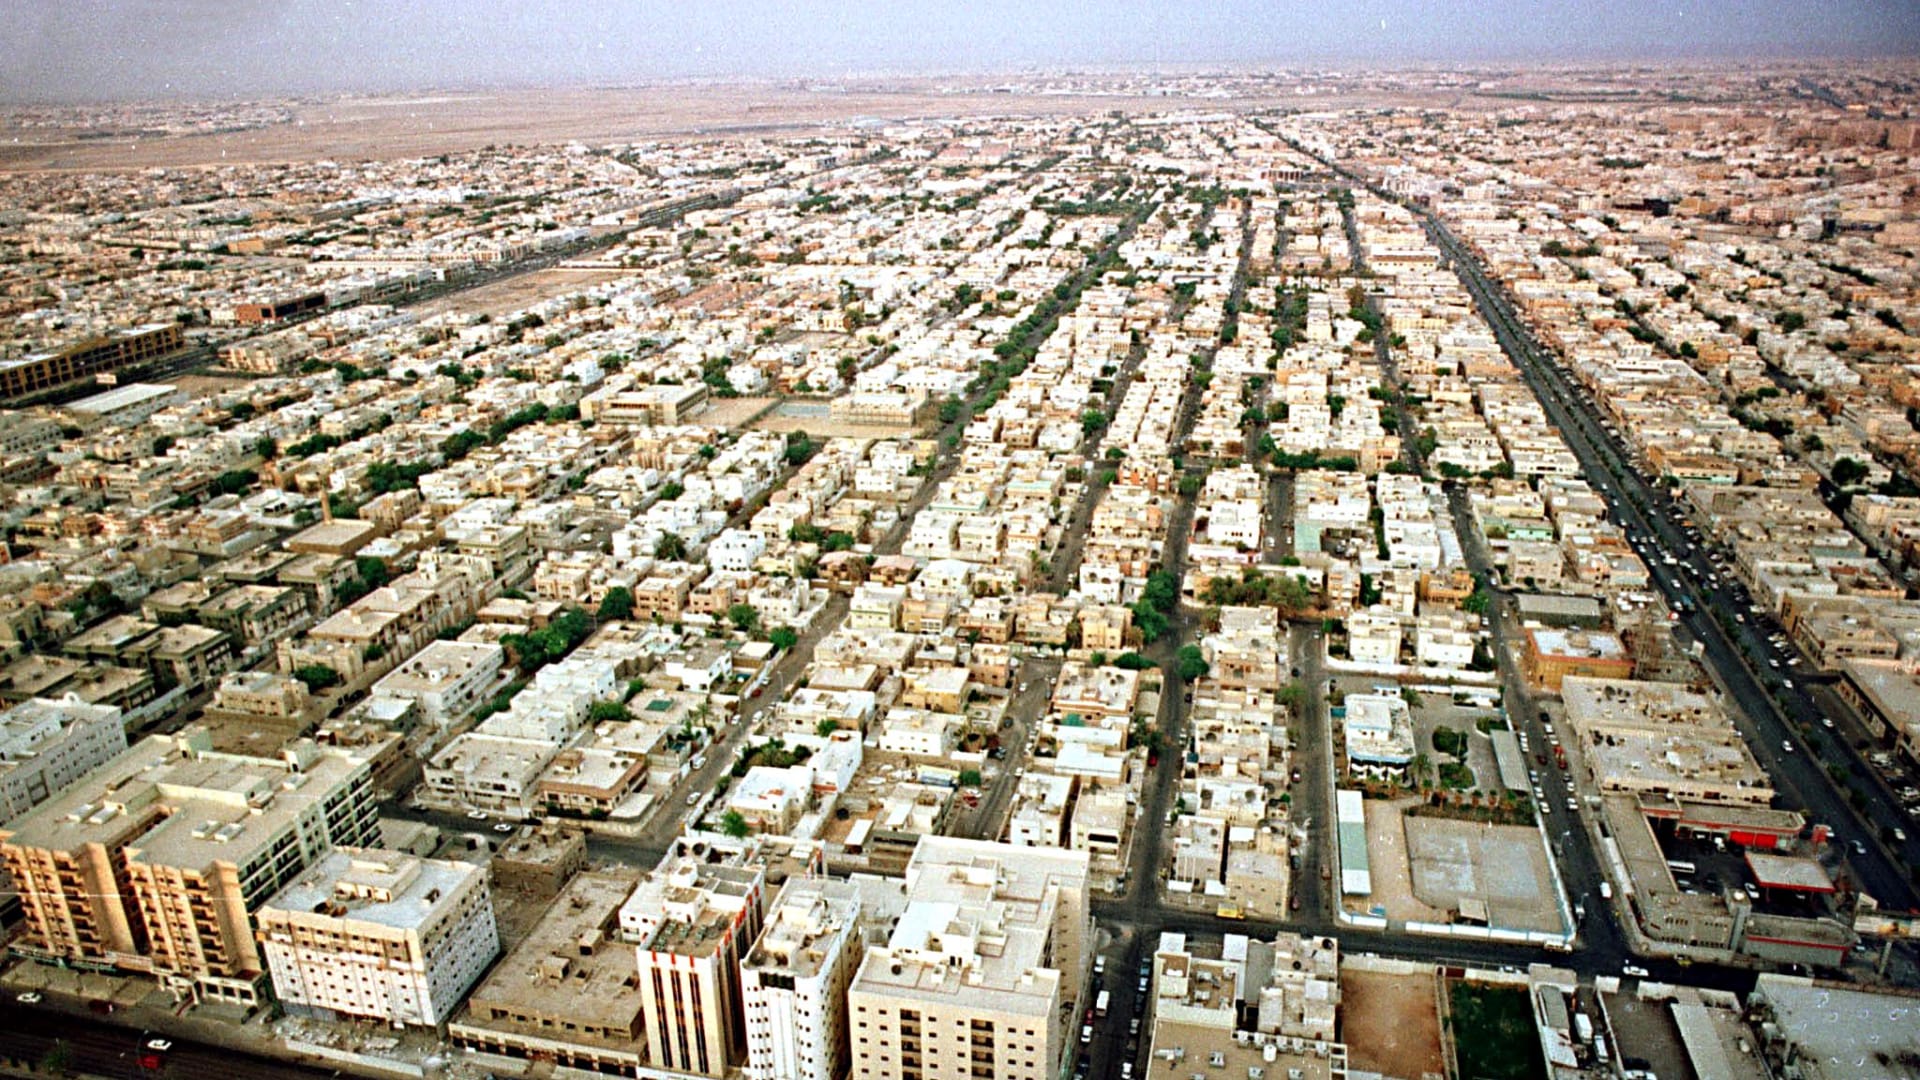 صورة ارشيفية عامة من العاصمة السعودية، الرياض العام 2000